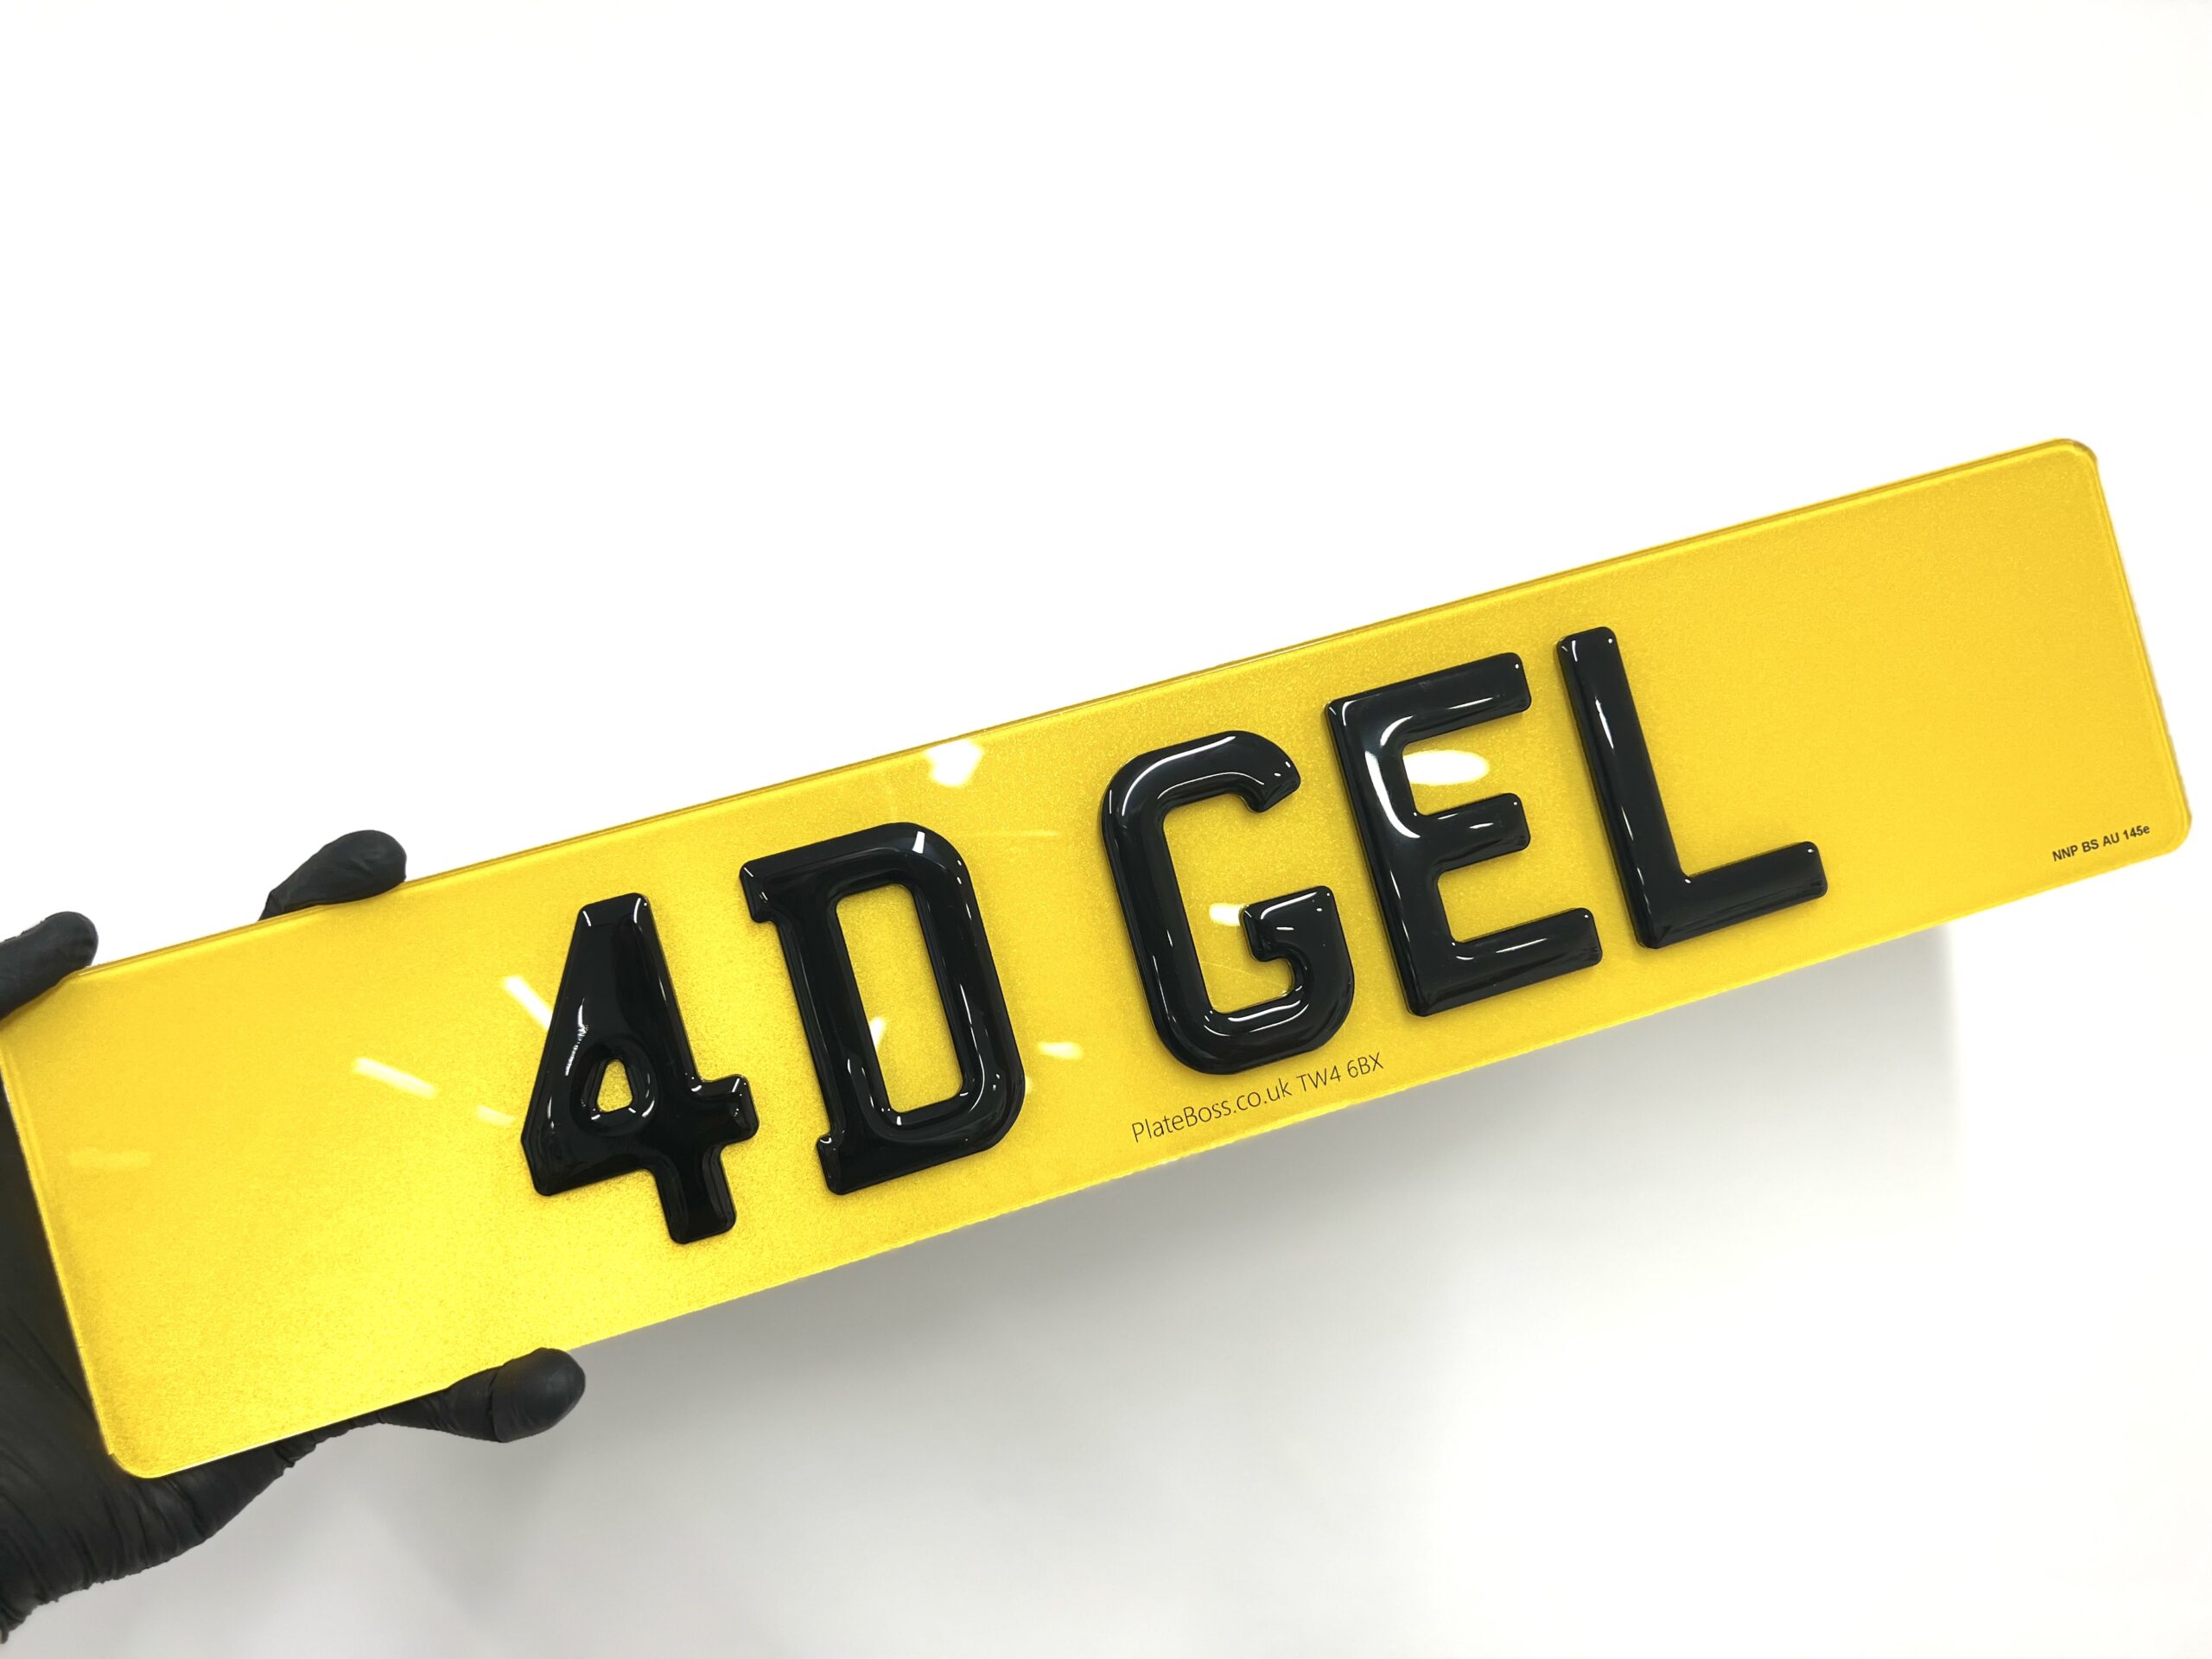 Buy 4D 3mm Gel Plates | 4D 3mm Plates | PlateBoss.co.uk